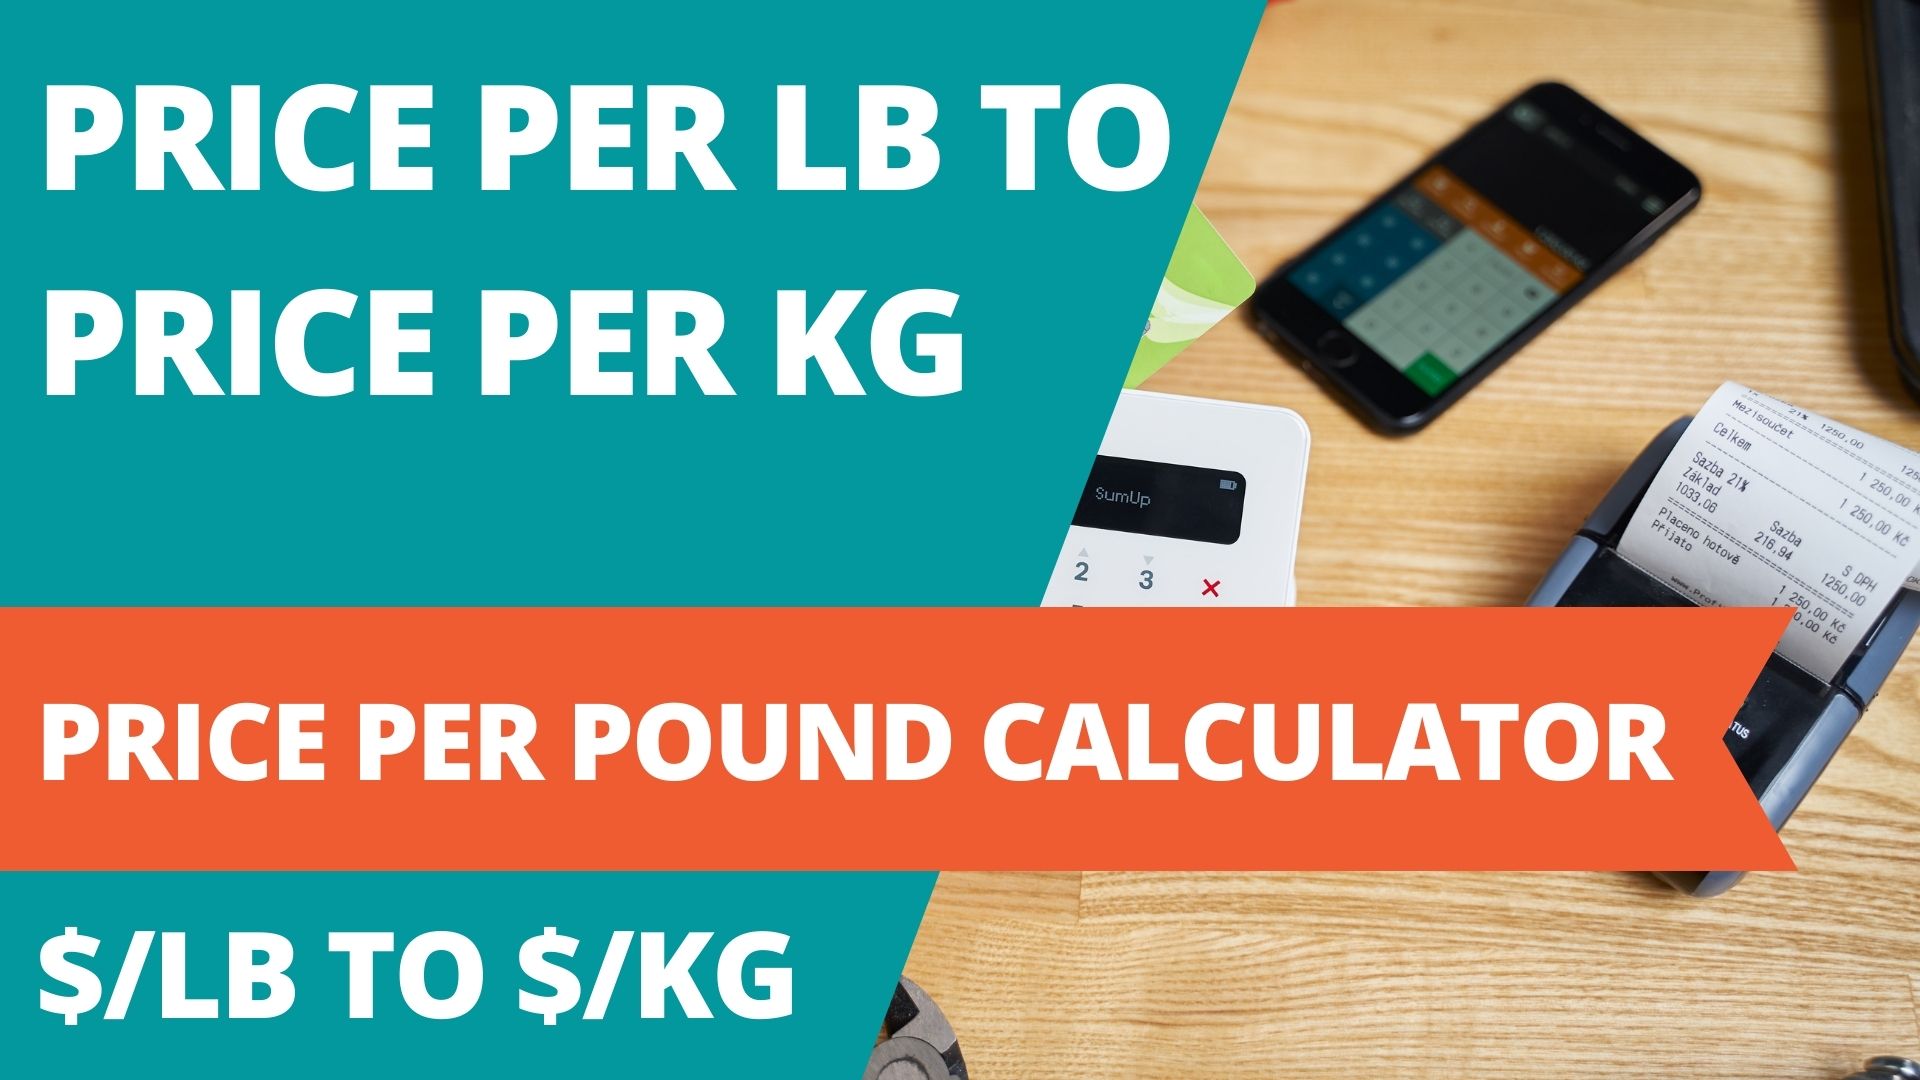 Price per Pound to Price per Kg | Cost per Pound Calculator | $/lb to $/kg